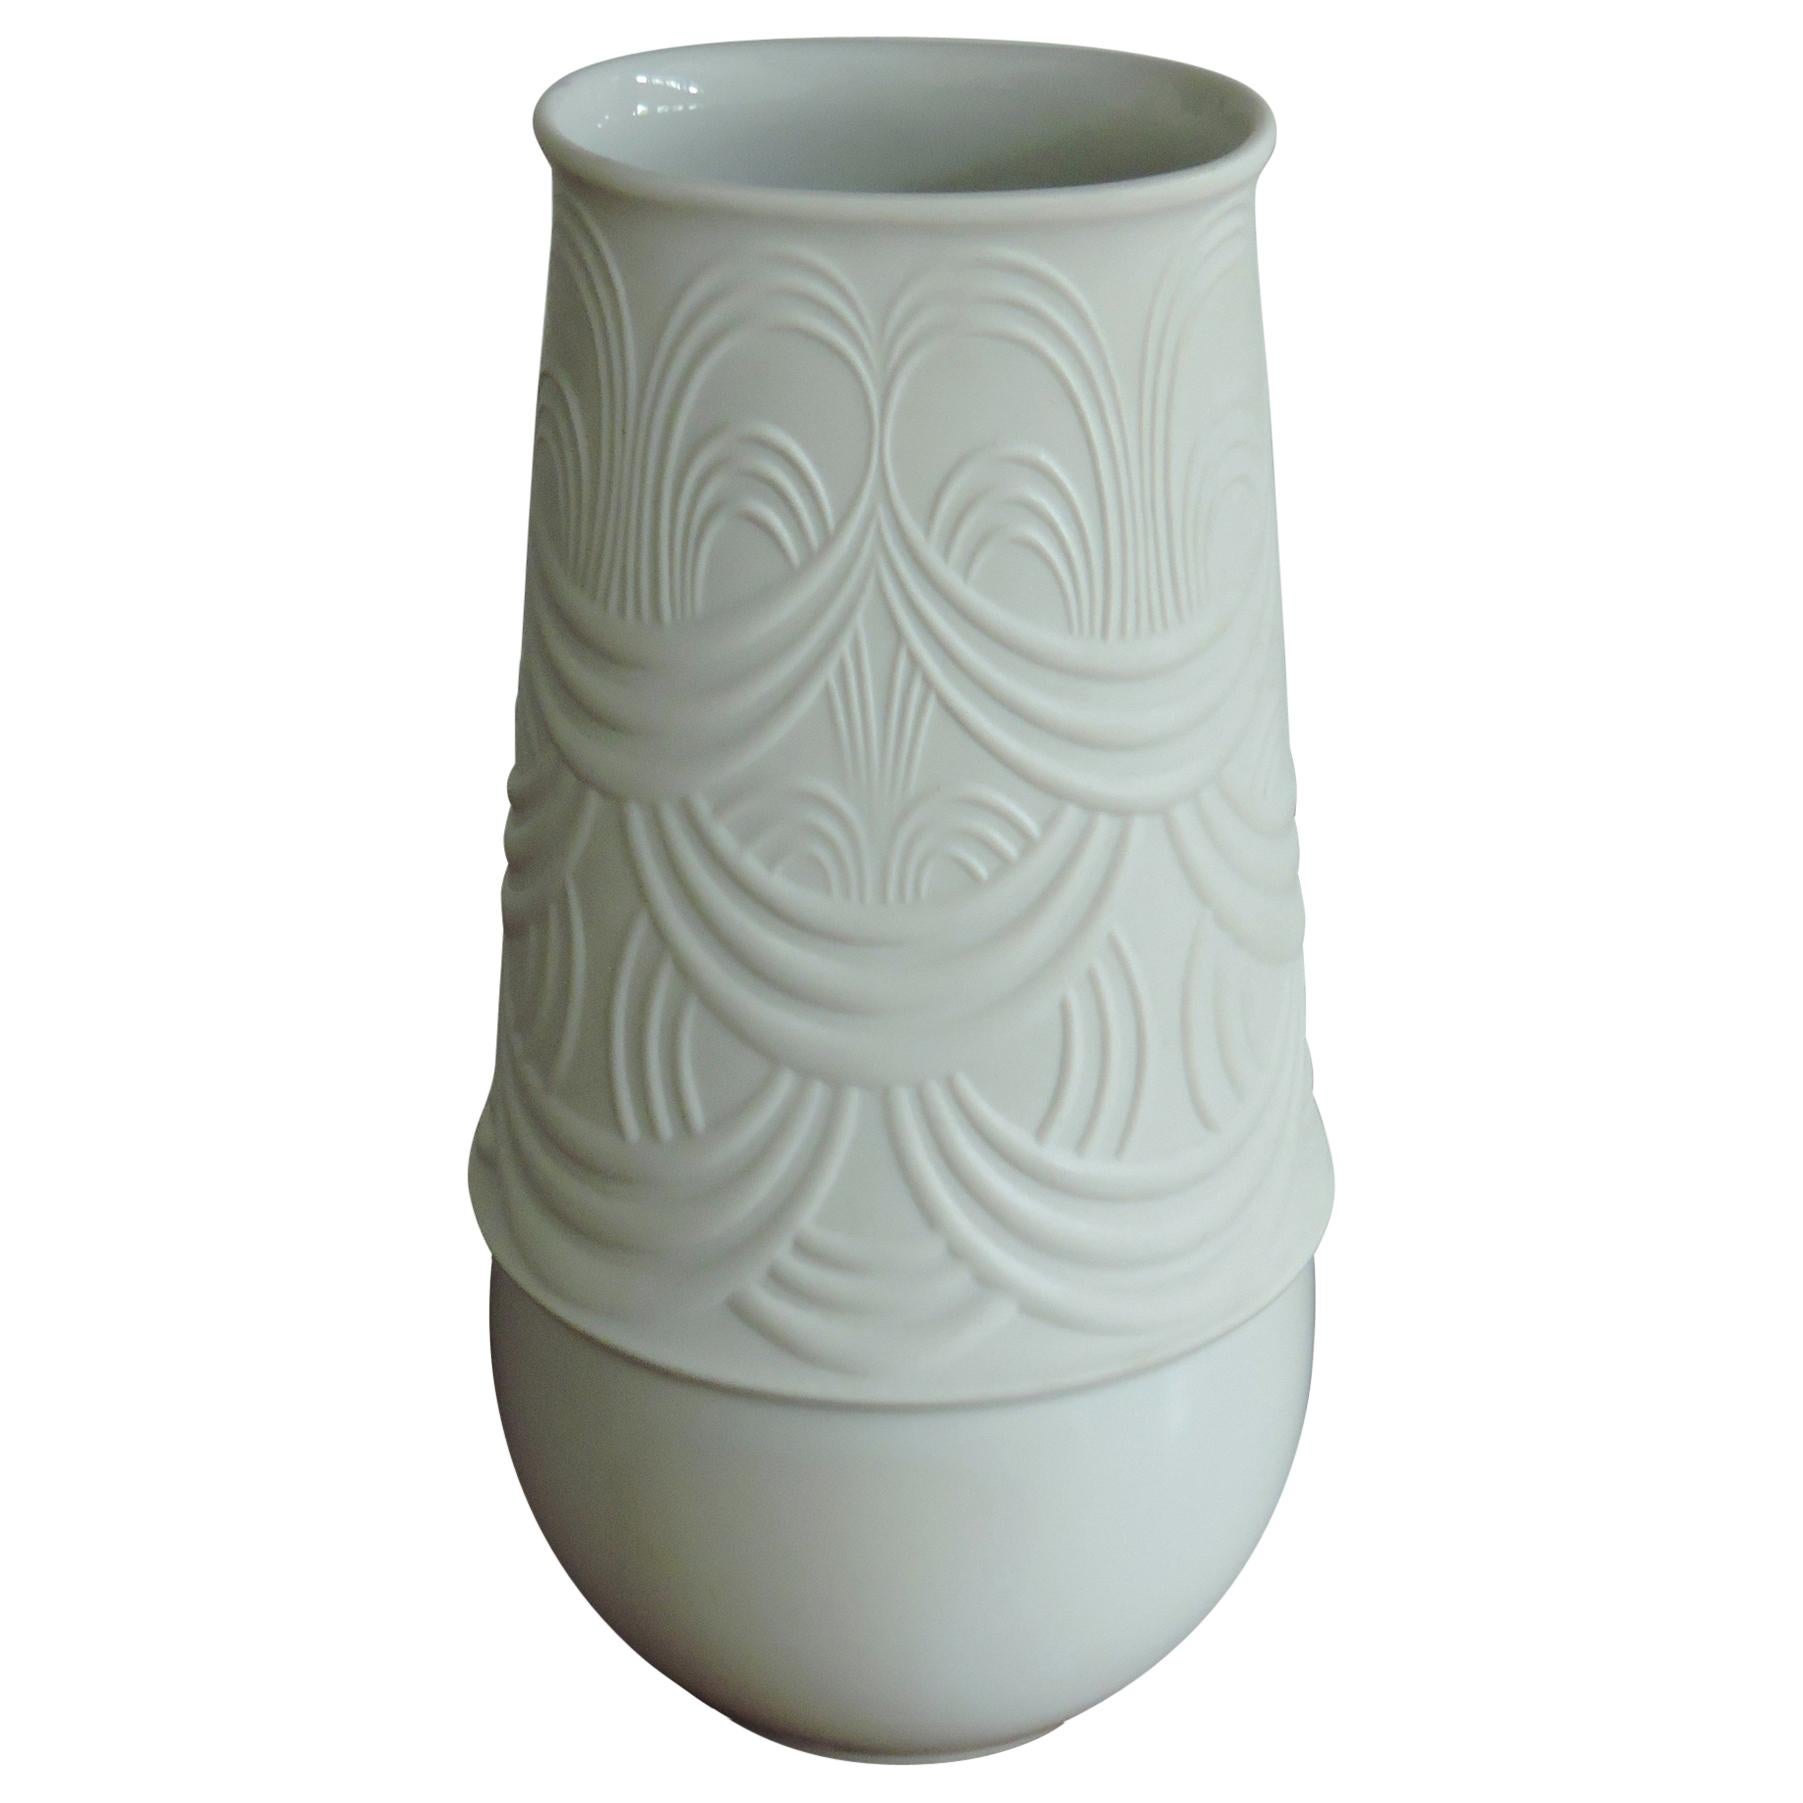 Bjorn Wiinblad White Porcelain Vase for Rosenthal Studio Line